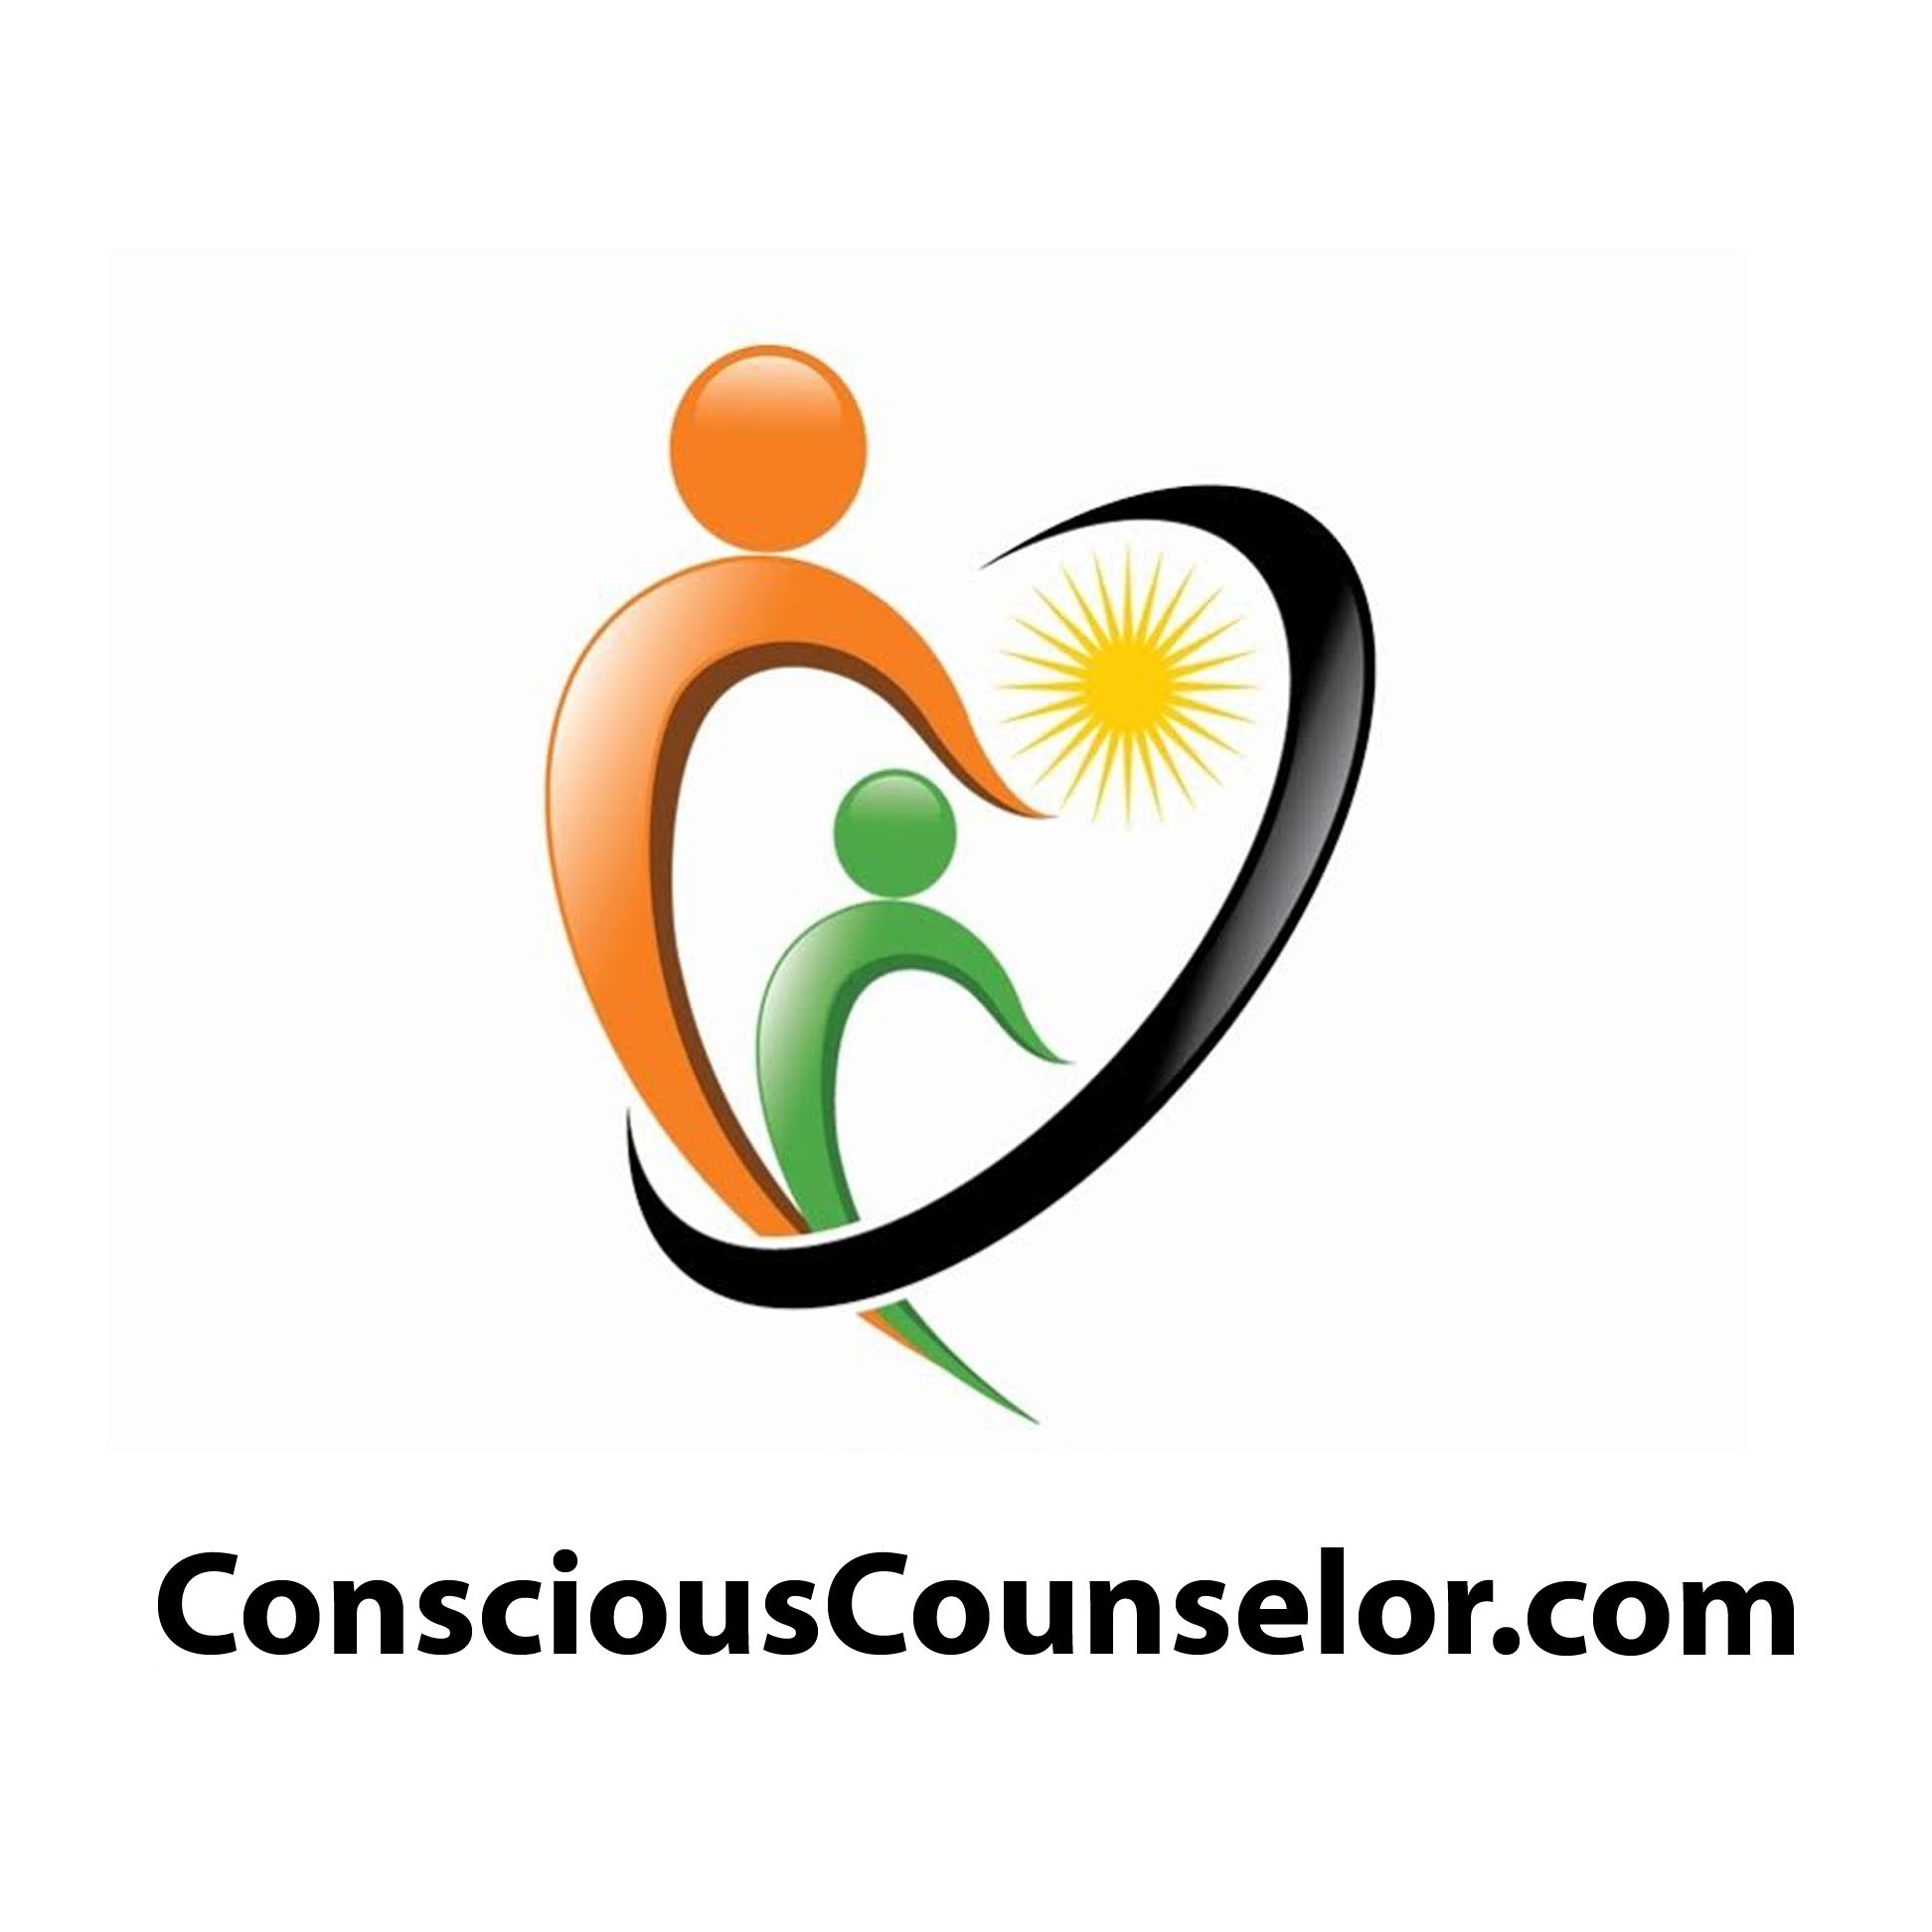 Conscious Counselor